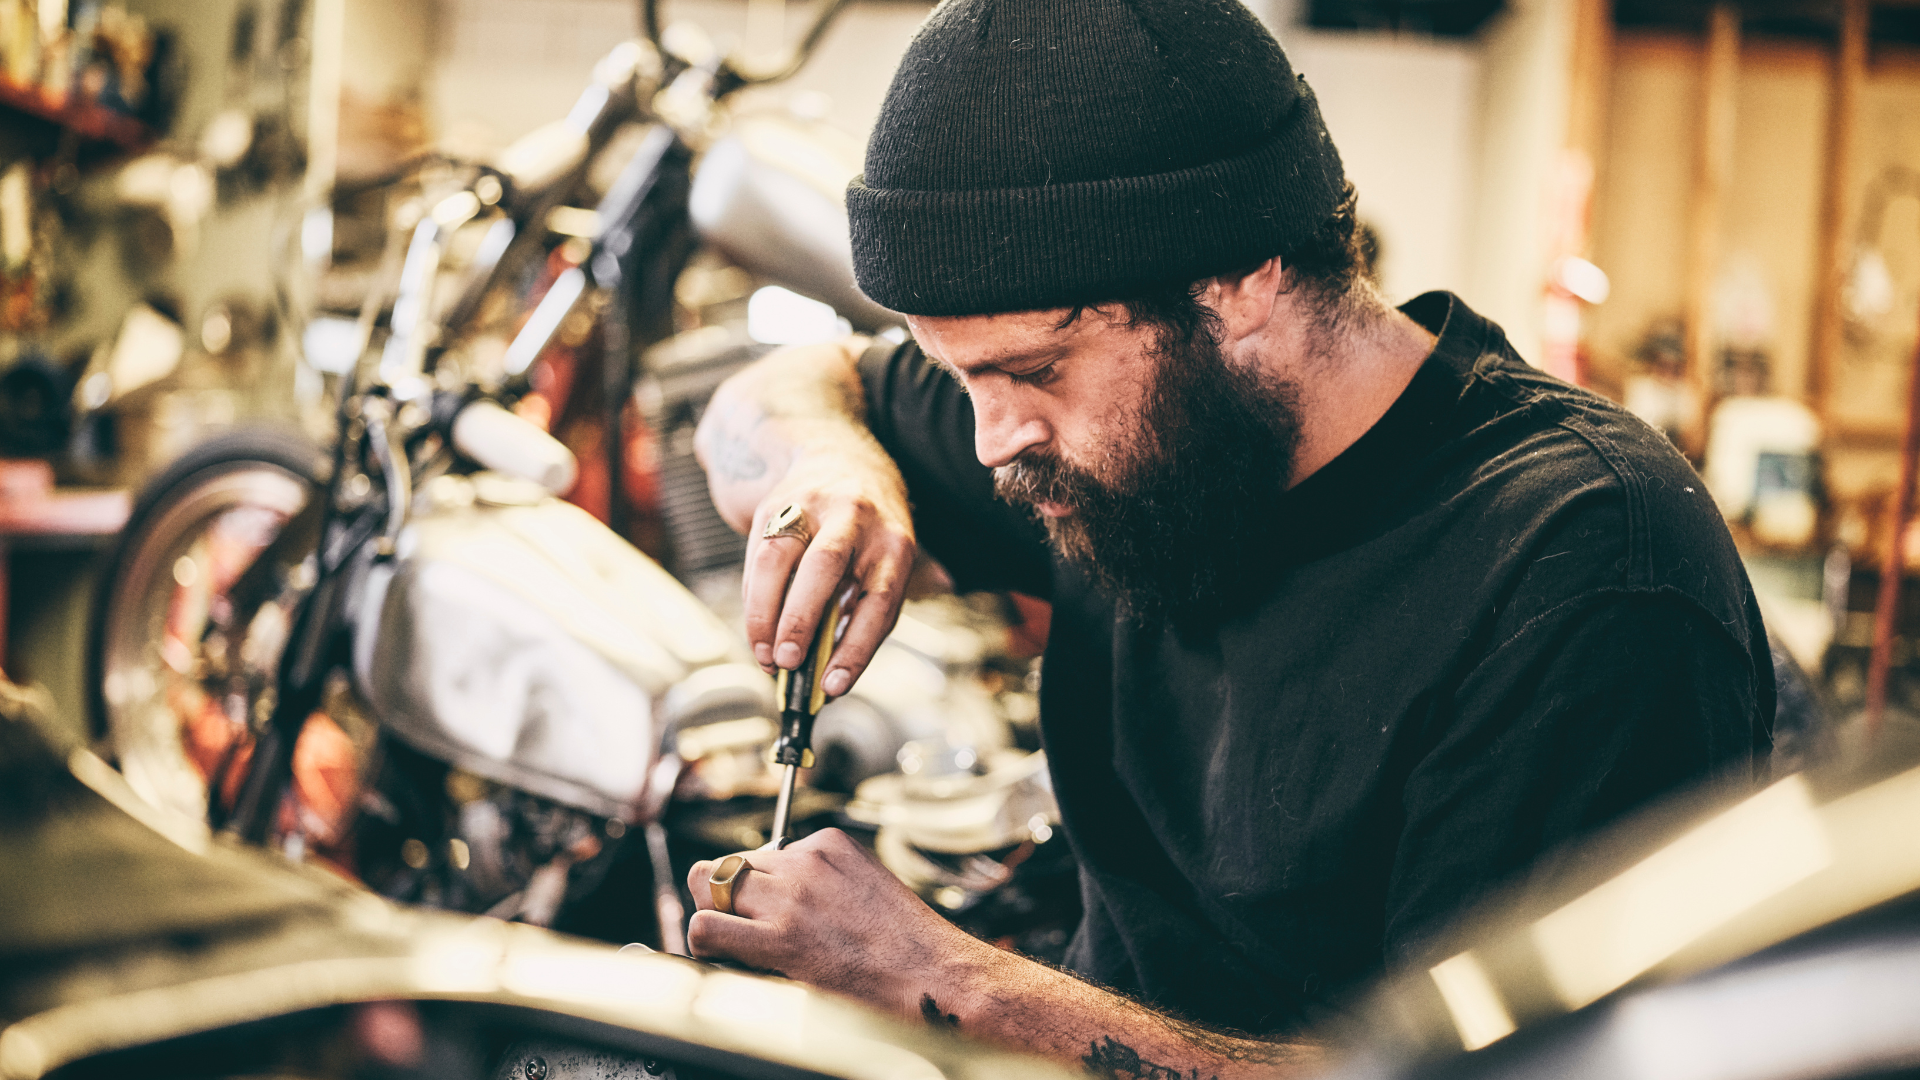 Migliora le tue abilità: iscriviti a un corso di meccanico Harley Davidson - moto - Racext 21